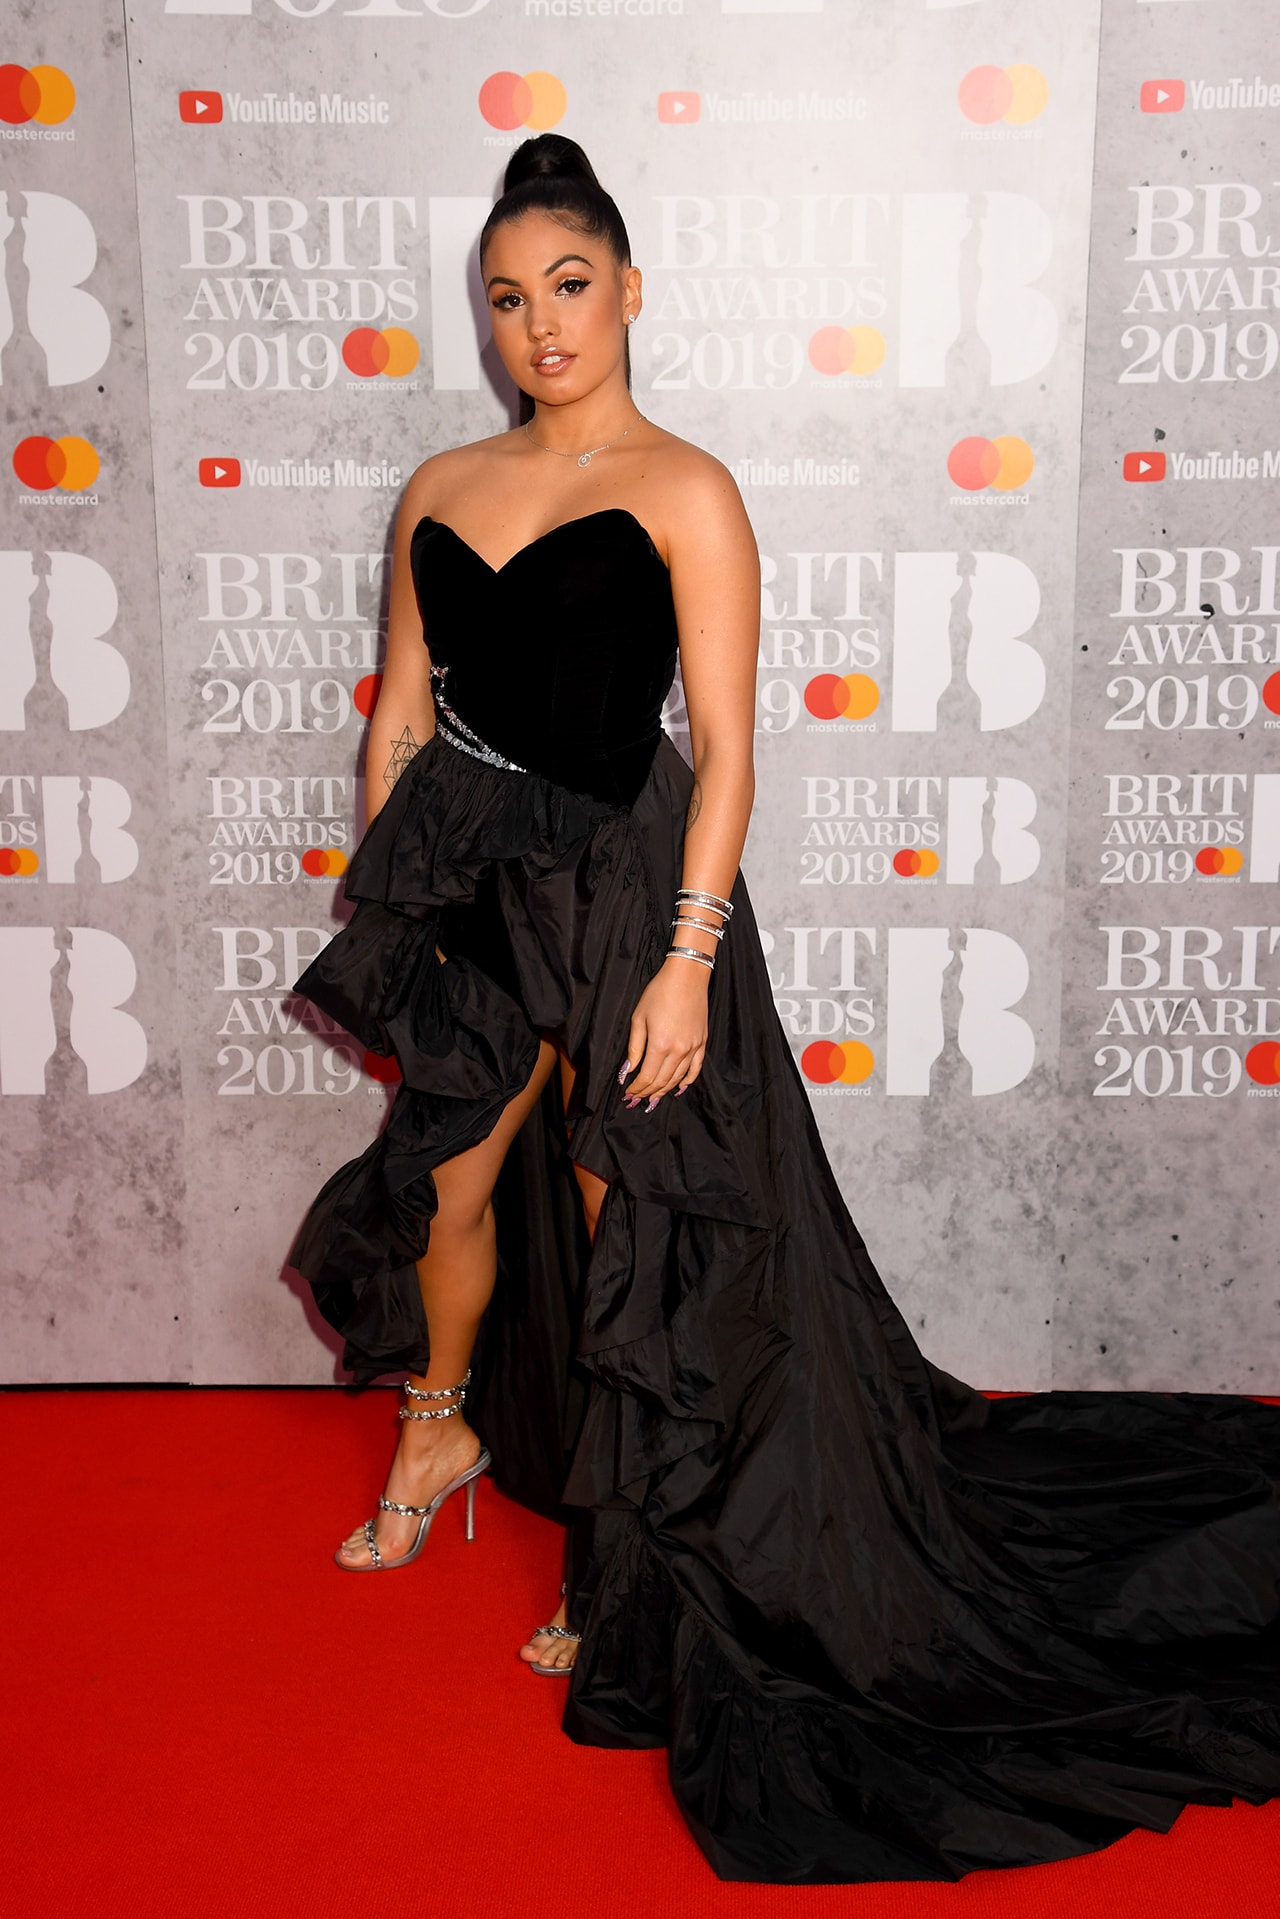 Mabel Mcvey Brit awards 2019 red carpet black dress gown